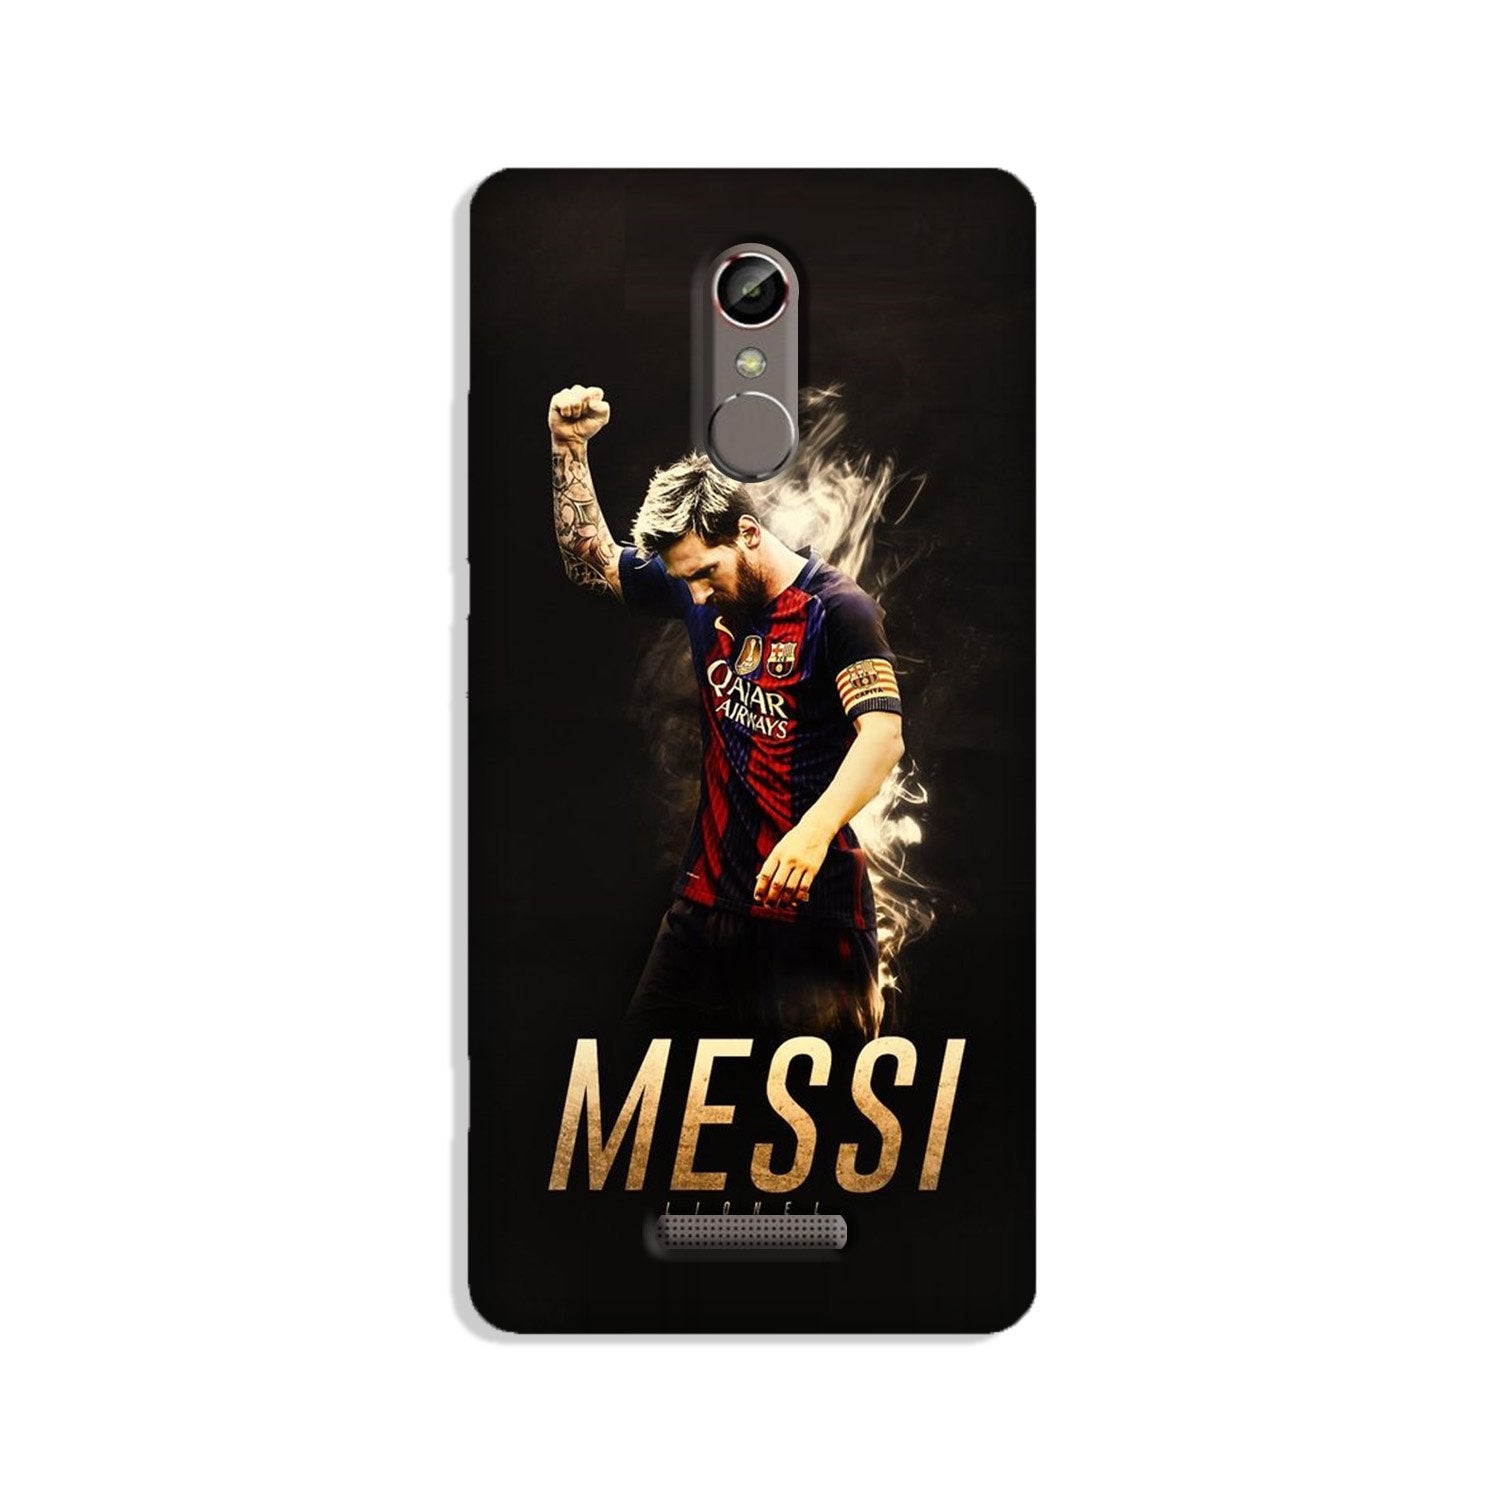 Messi Case for Redmi Note 3(Design - 163)